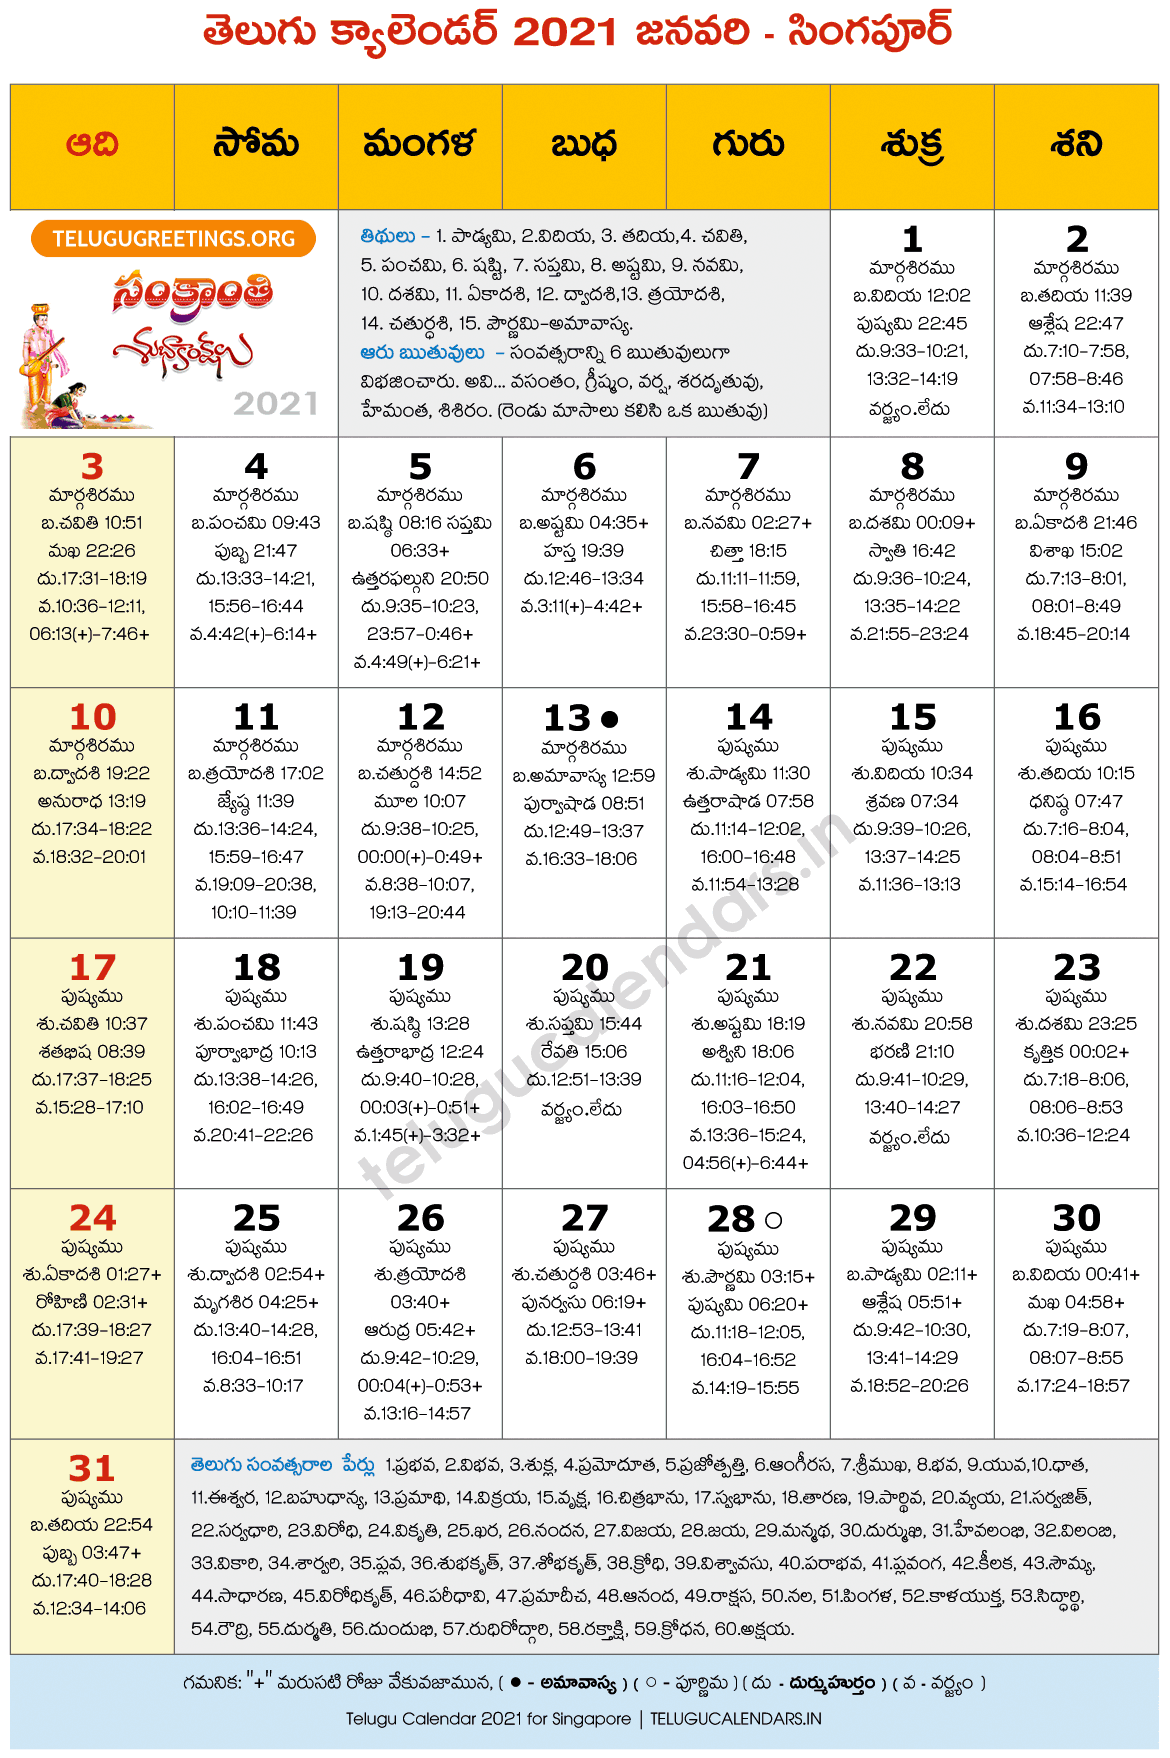 Telugu Calendar Chicago 2022 Singapore 2021 January Telugu Calendar - 2022 Telugu Calendar Pdf